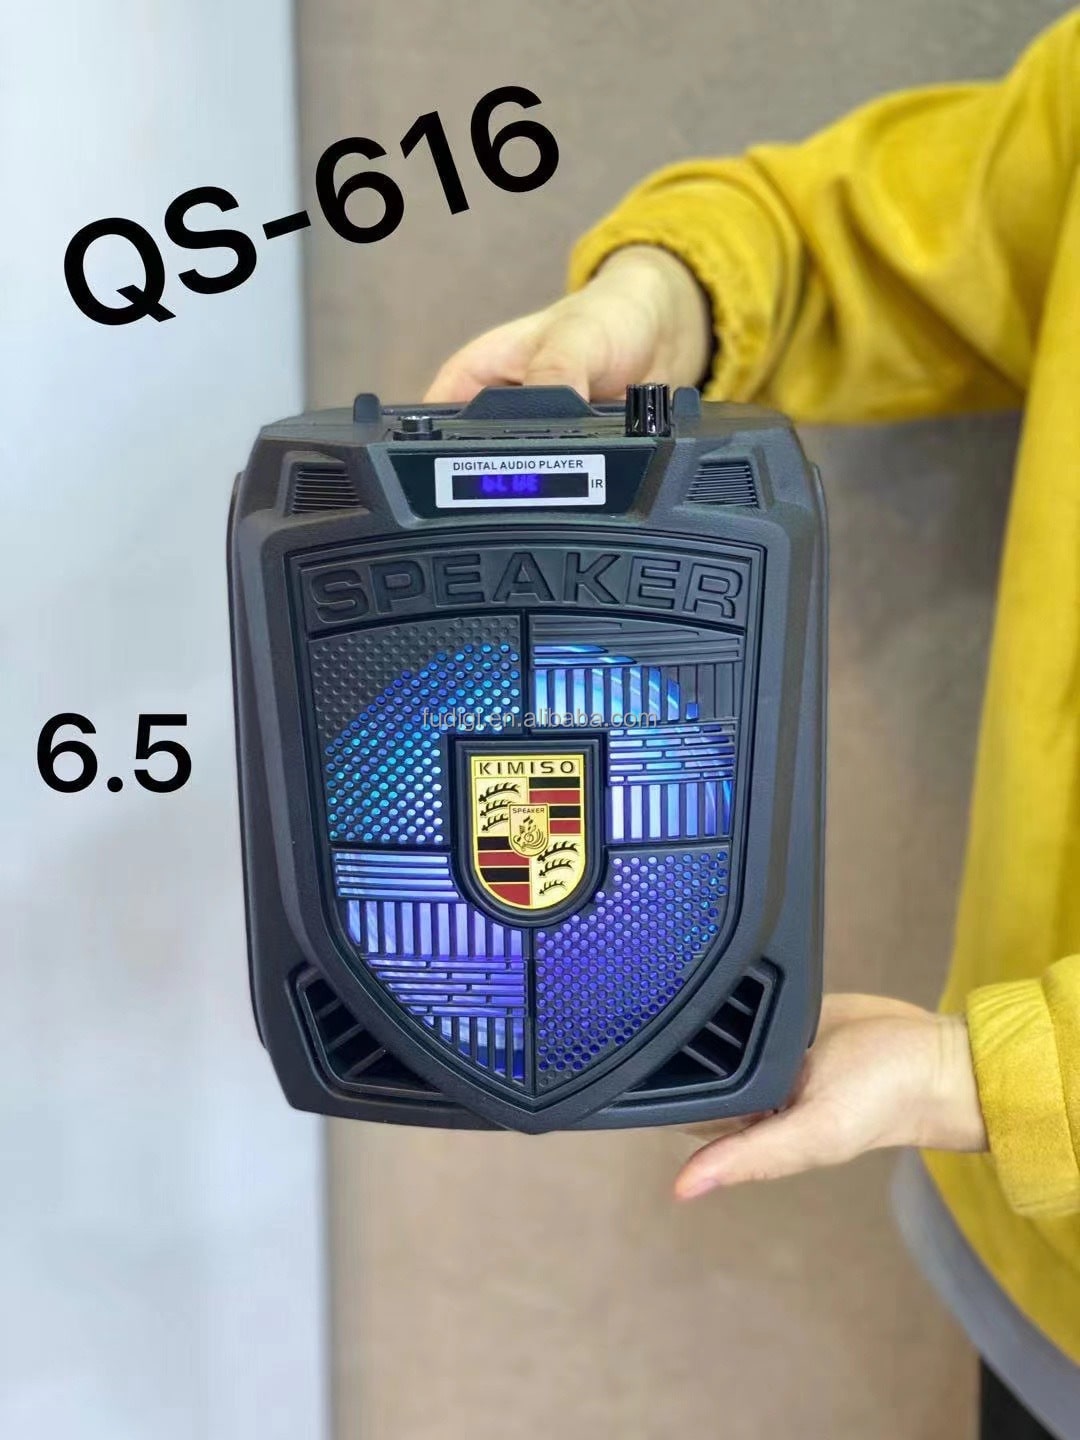 خرید اسپیکر چمدانی بلوتوثی رم و فلش خور Kimiso QS-616 - گجت کالا |بهترینسایت فروش کنسول بازی پلی استیشن و لوازم جانبی ارزان